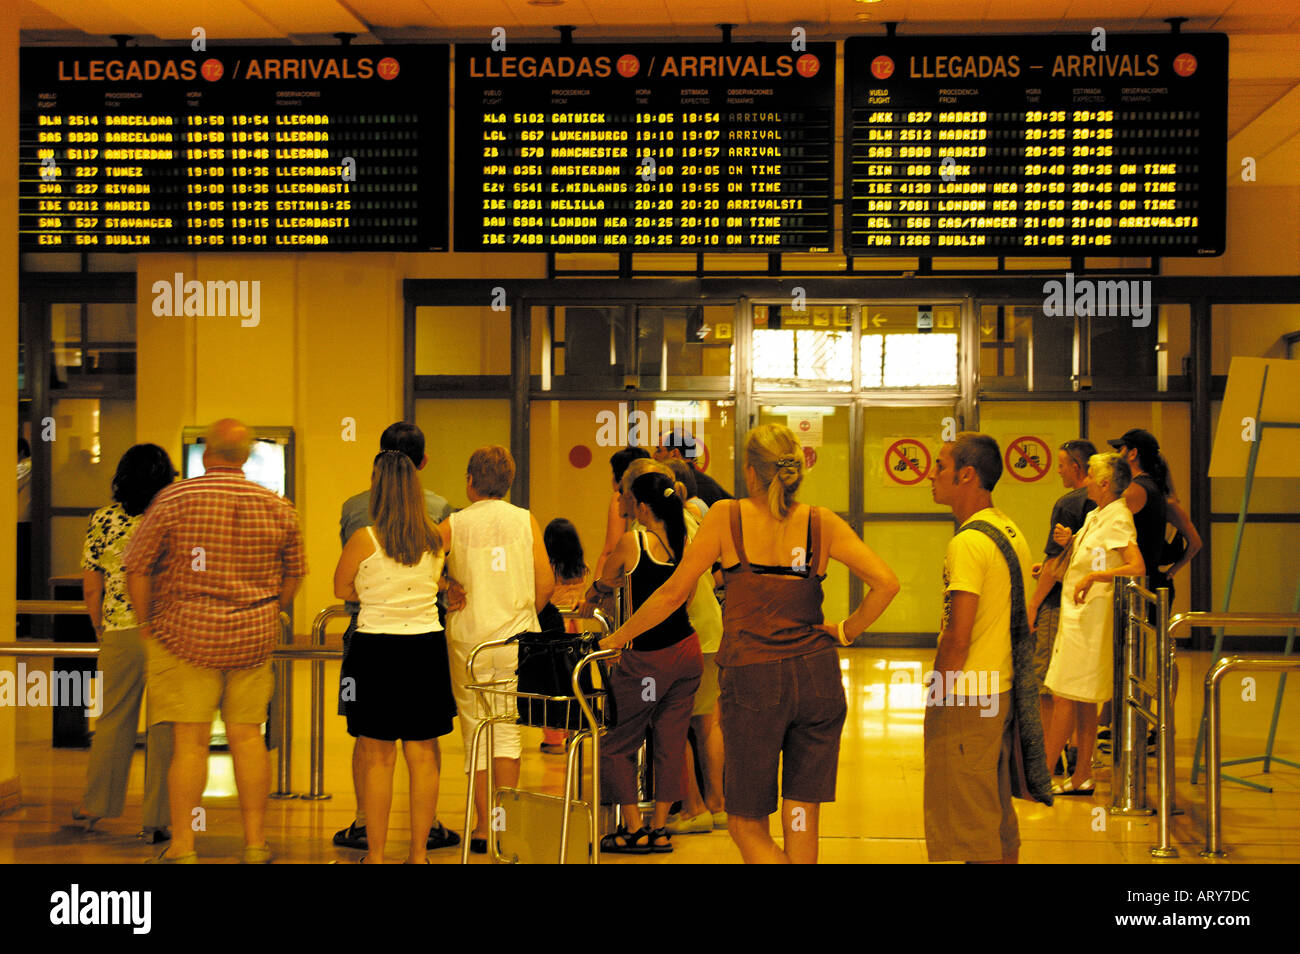 Spain Malaga arrival hall in Pablo Ruiz Picasso airport Stock Photo